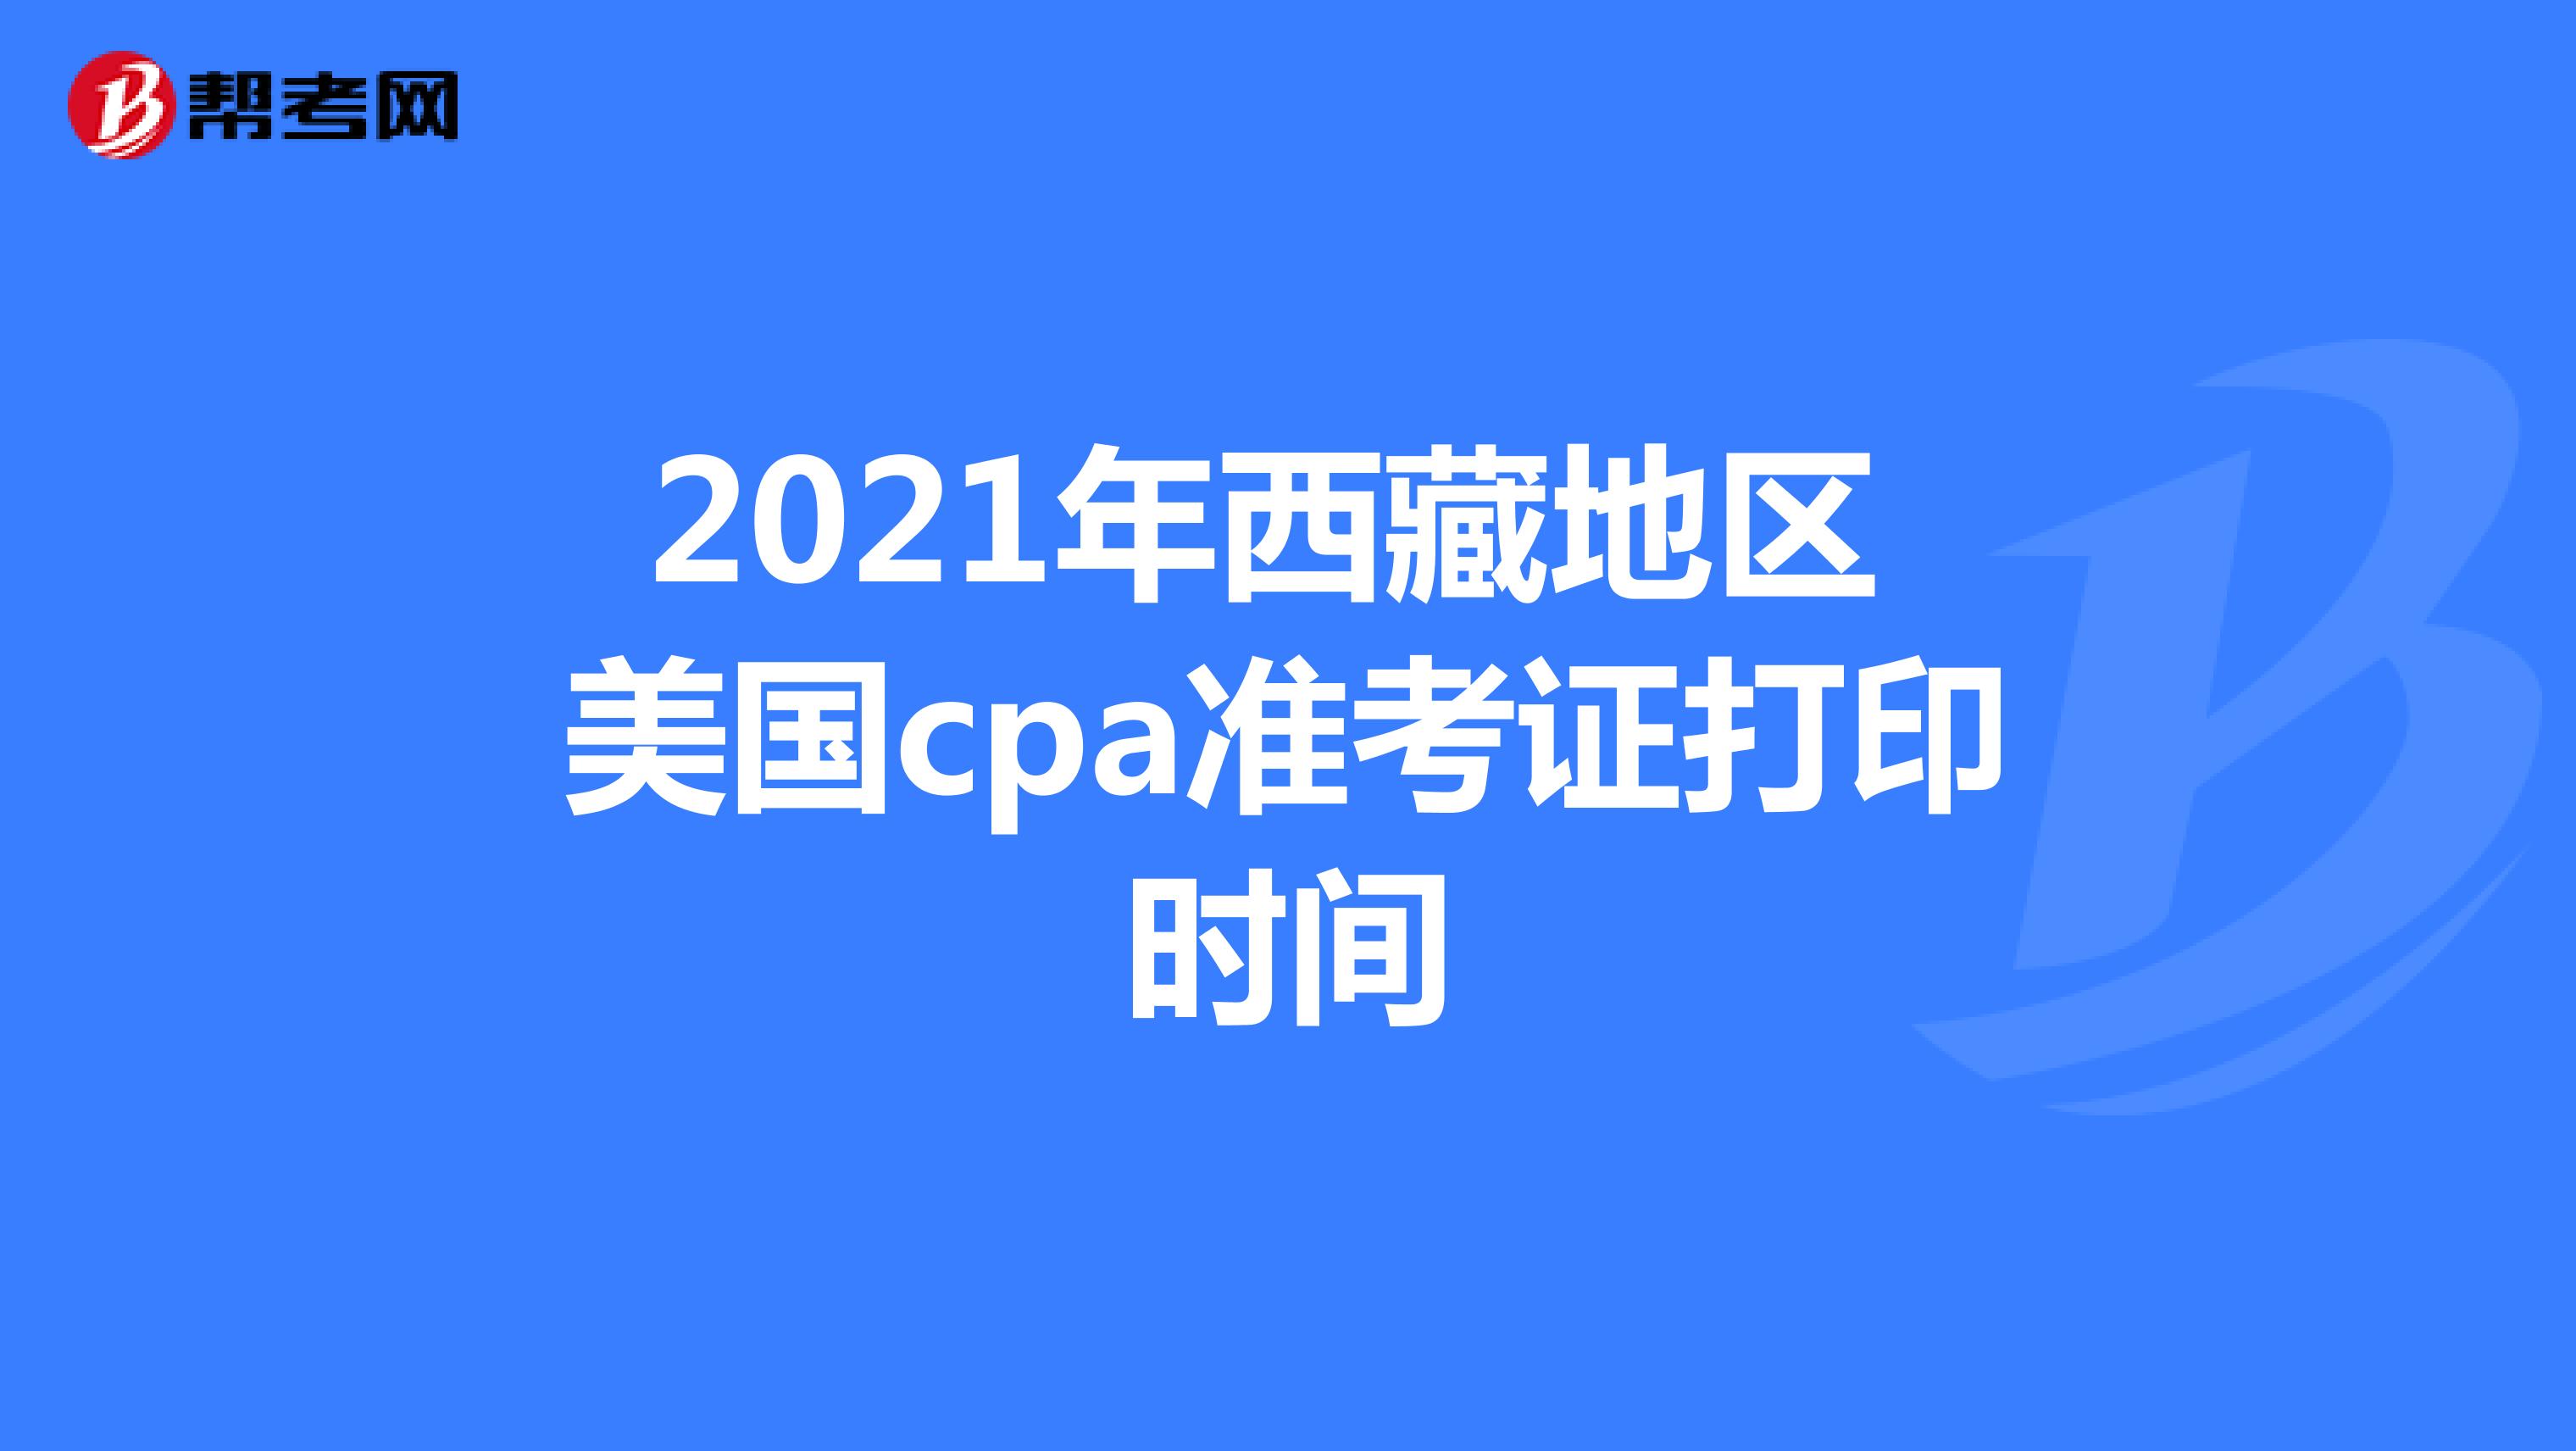 2021年西藏地区美国cpa准考证打印时间